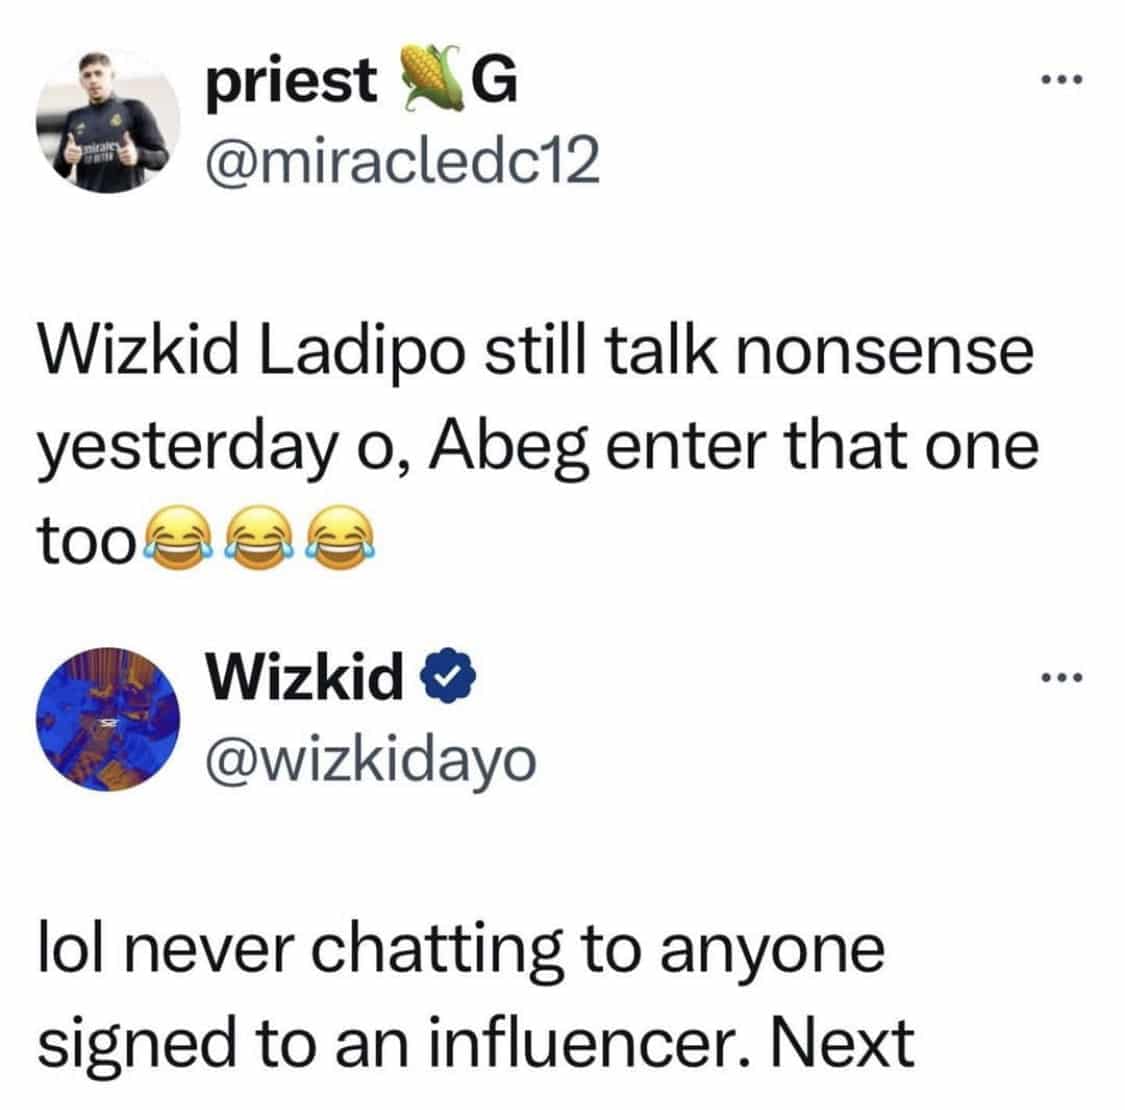 Wizkid’s response to Ladipoe’s tweet.